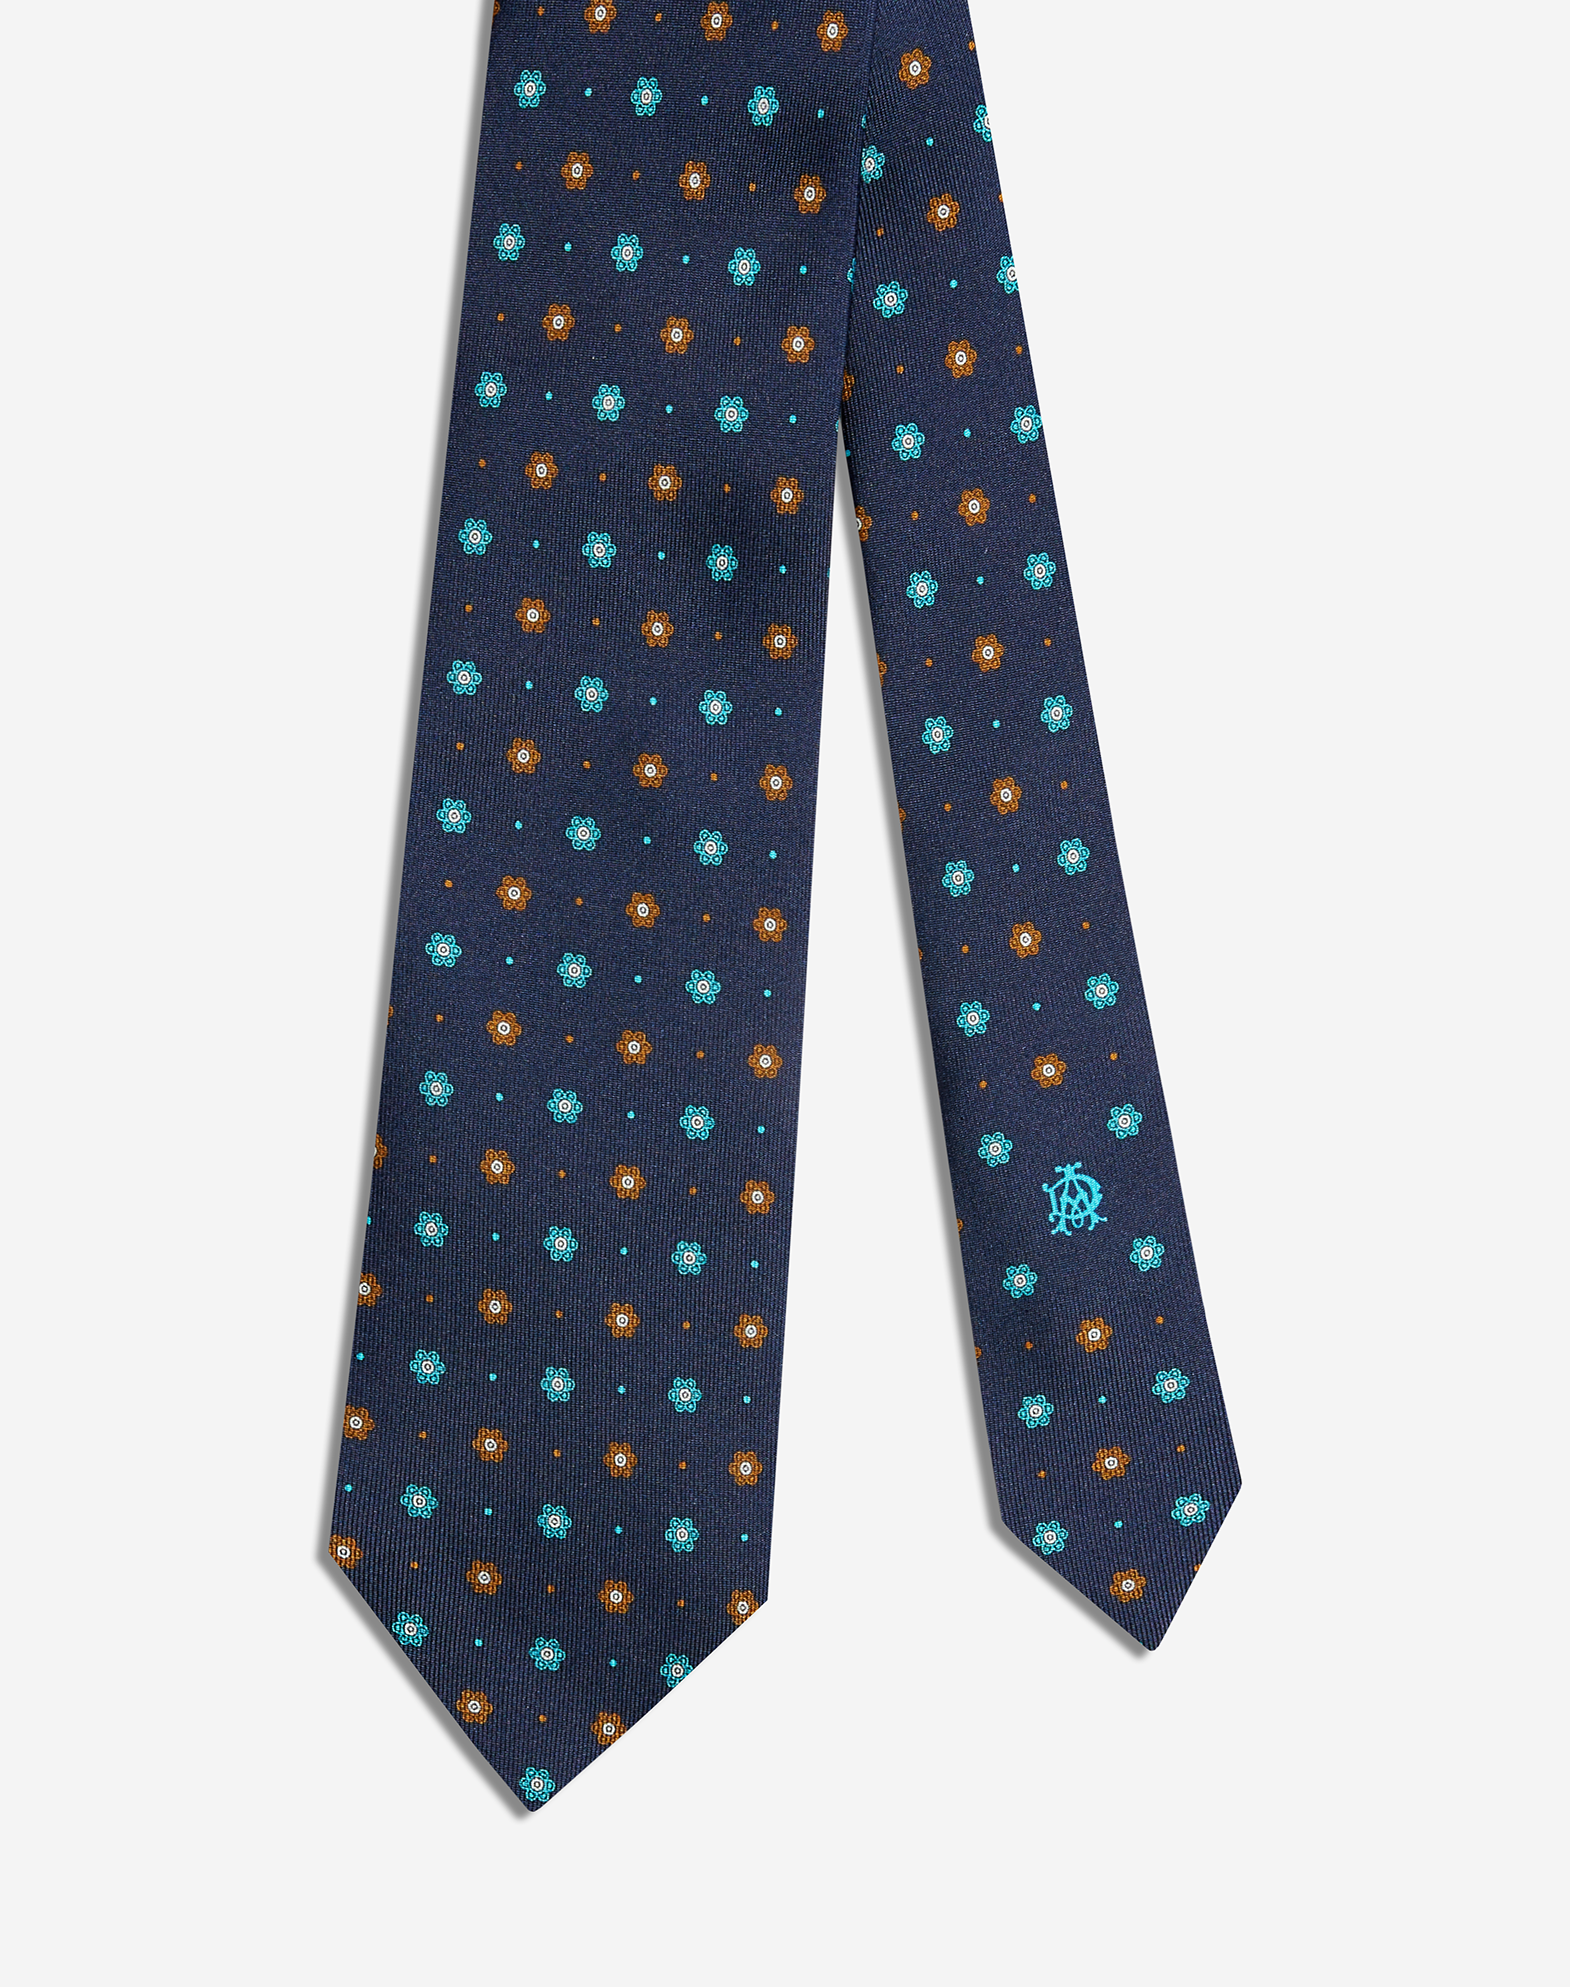 Dunhill Luxury Men's Tie